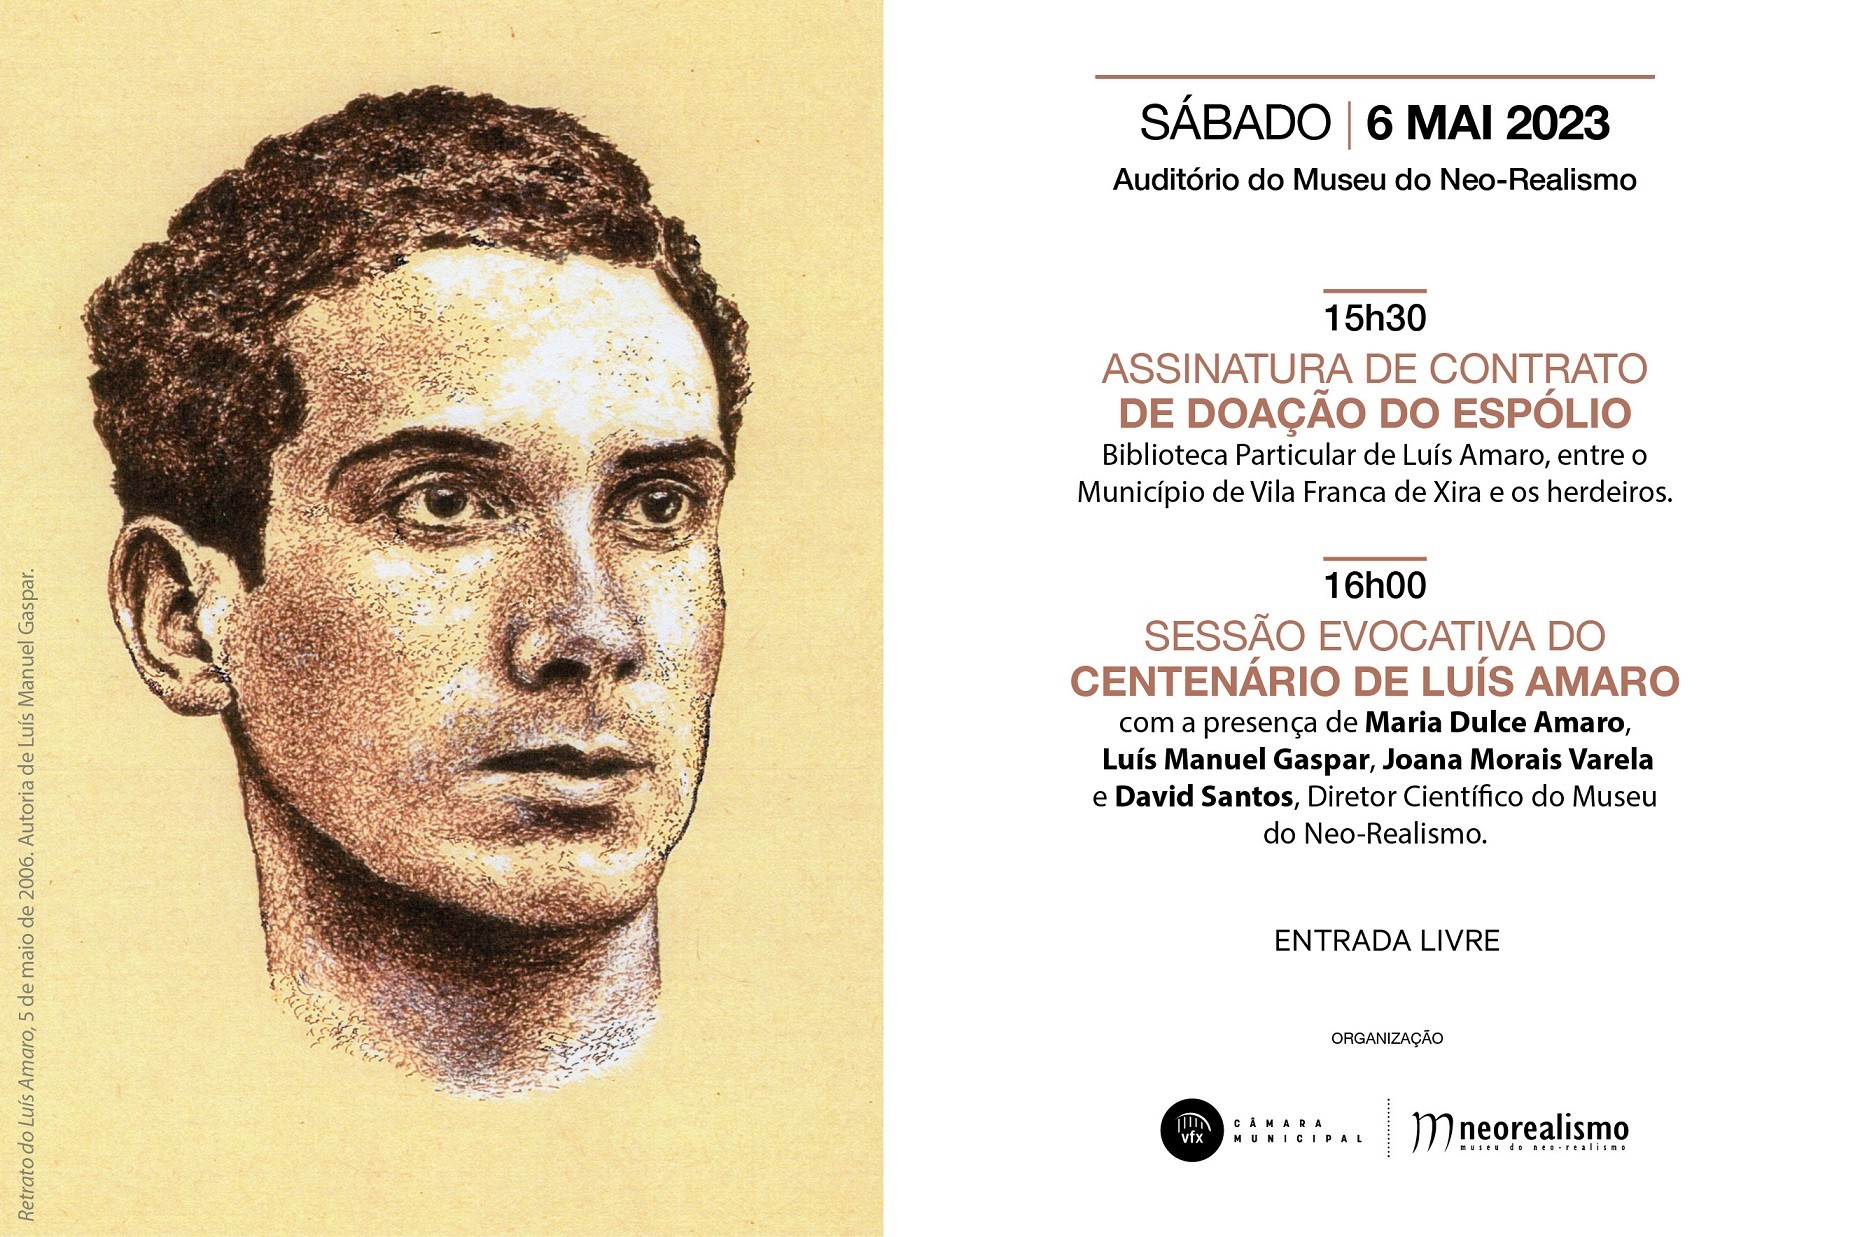 Sessão evocativa do centenário de Luís Amaro 